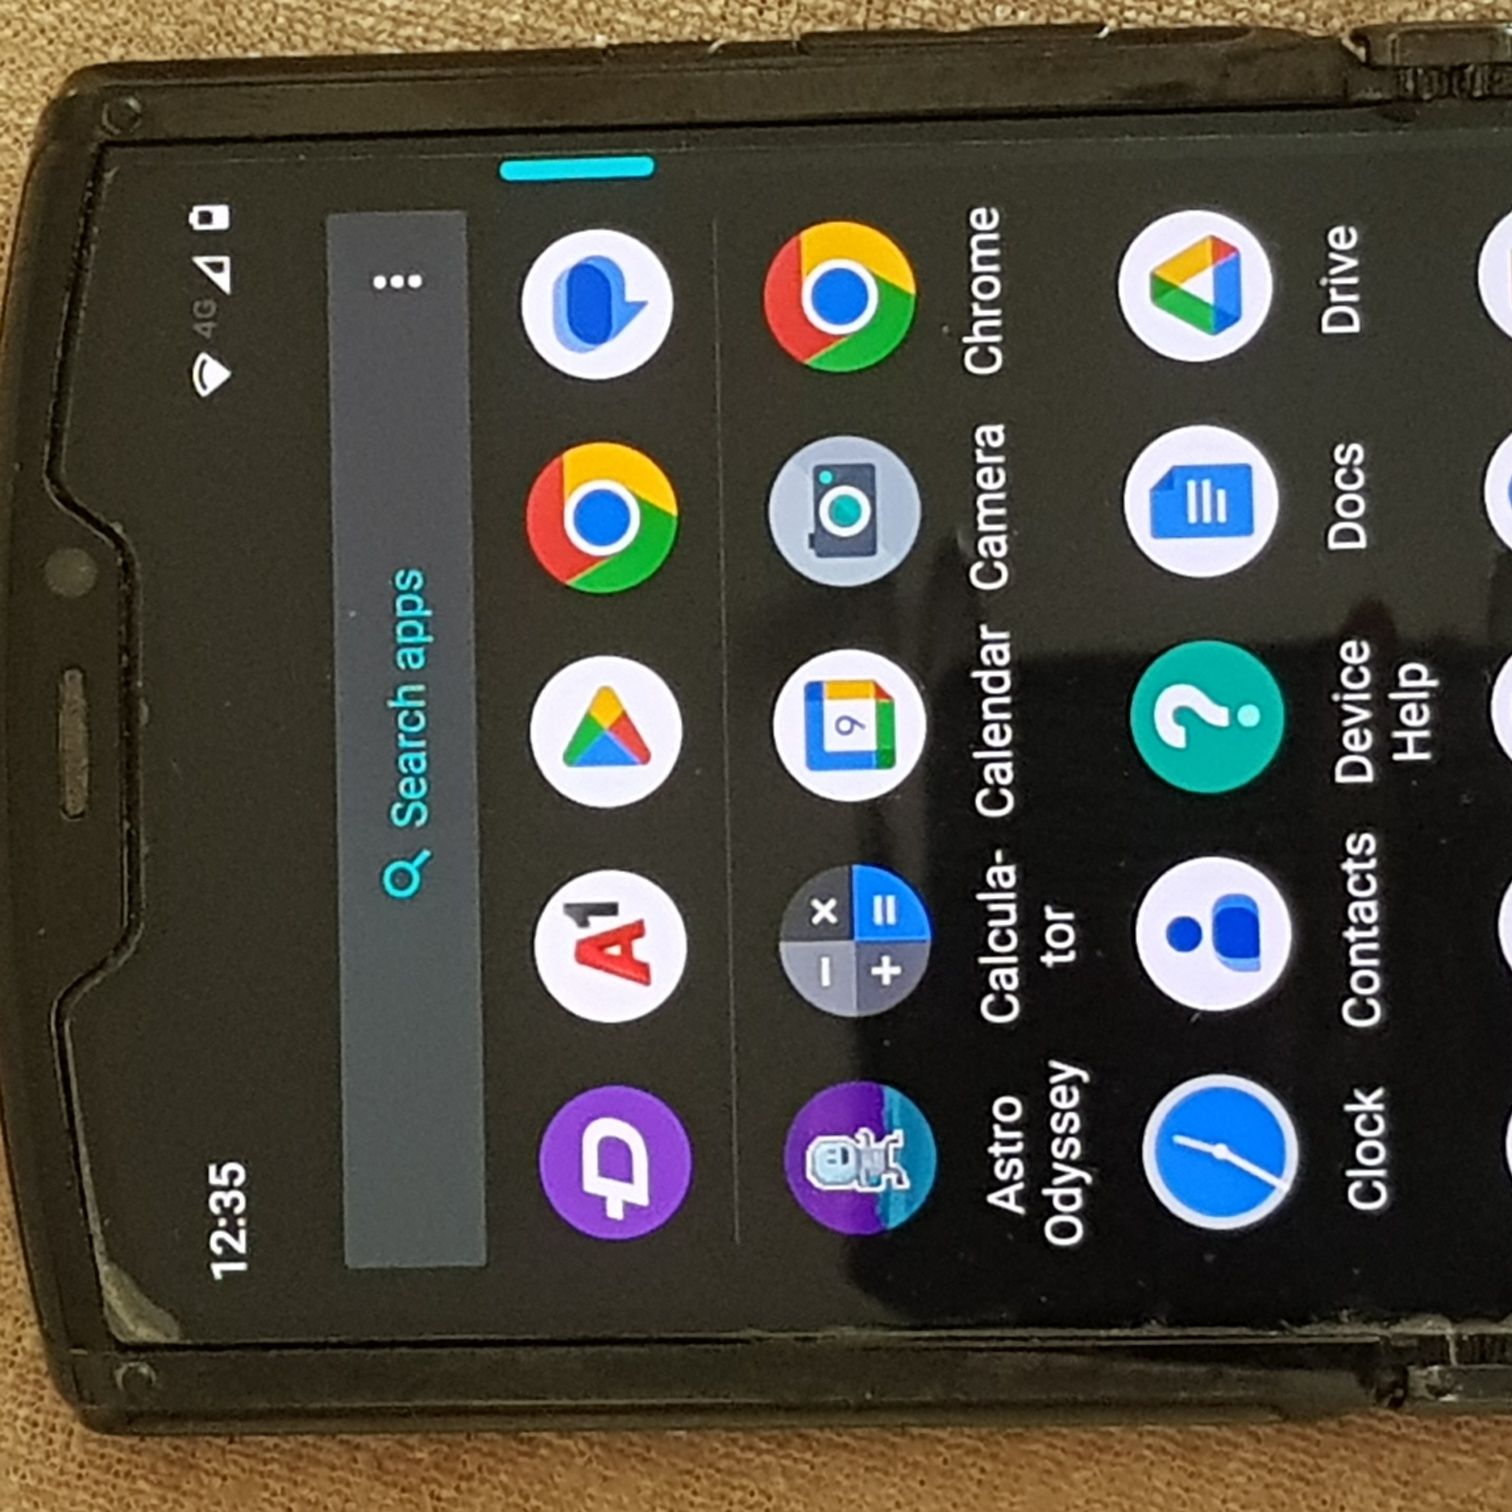 Motorola razr 2019g